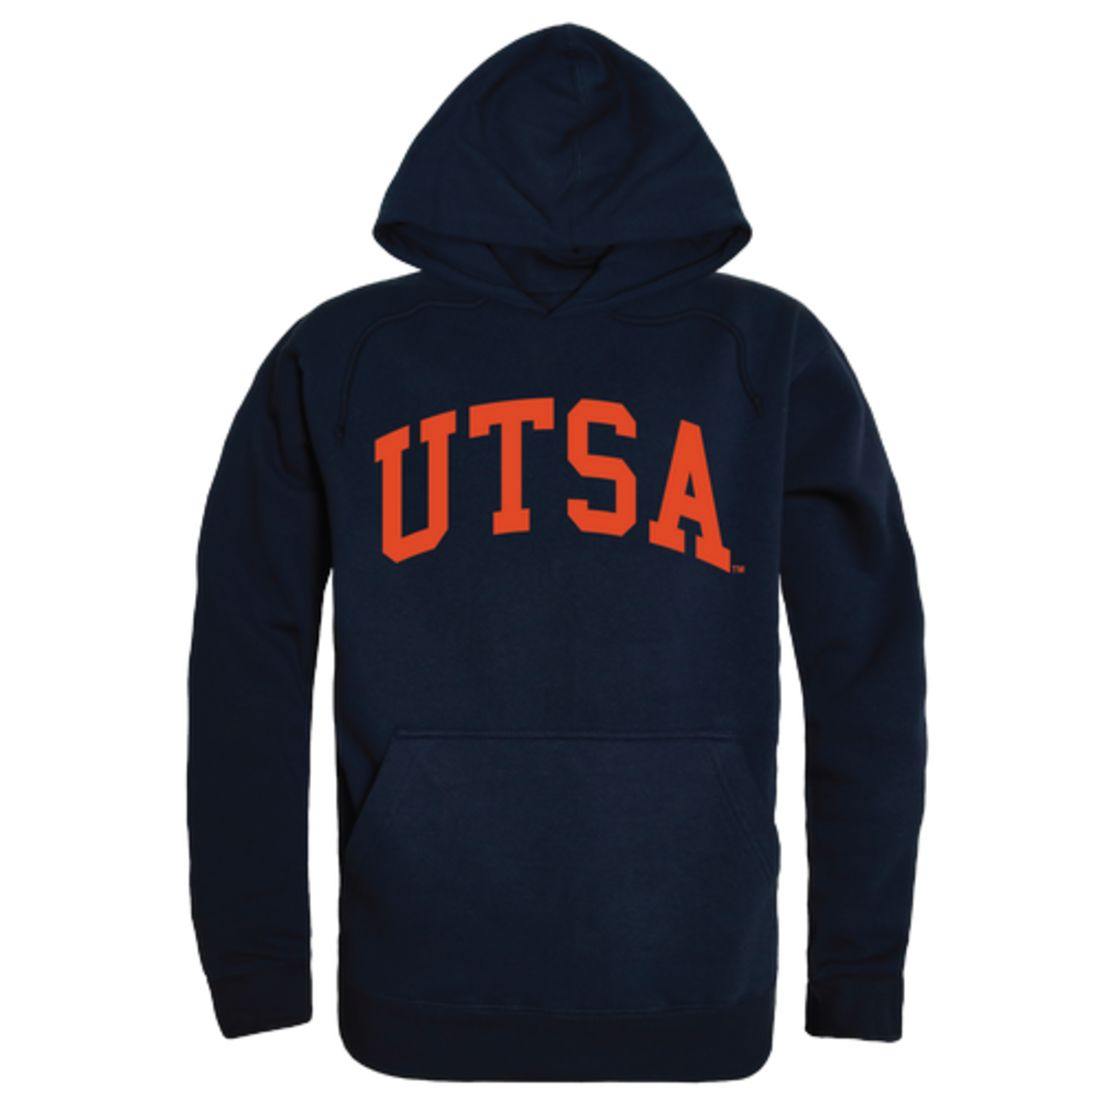 UTSA University of Texas at San Antonio Roadrunners College Hoodie Sweatshirt Navy-Campus-Wardrobe